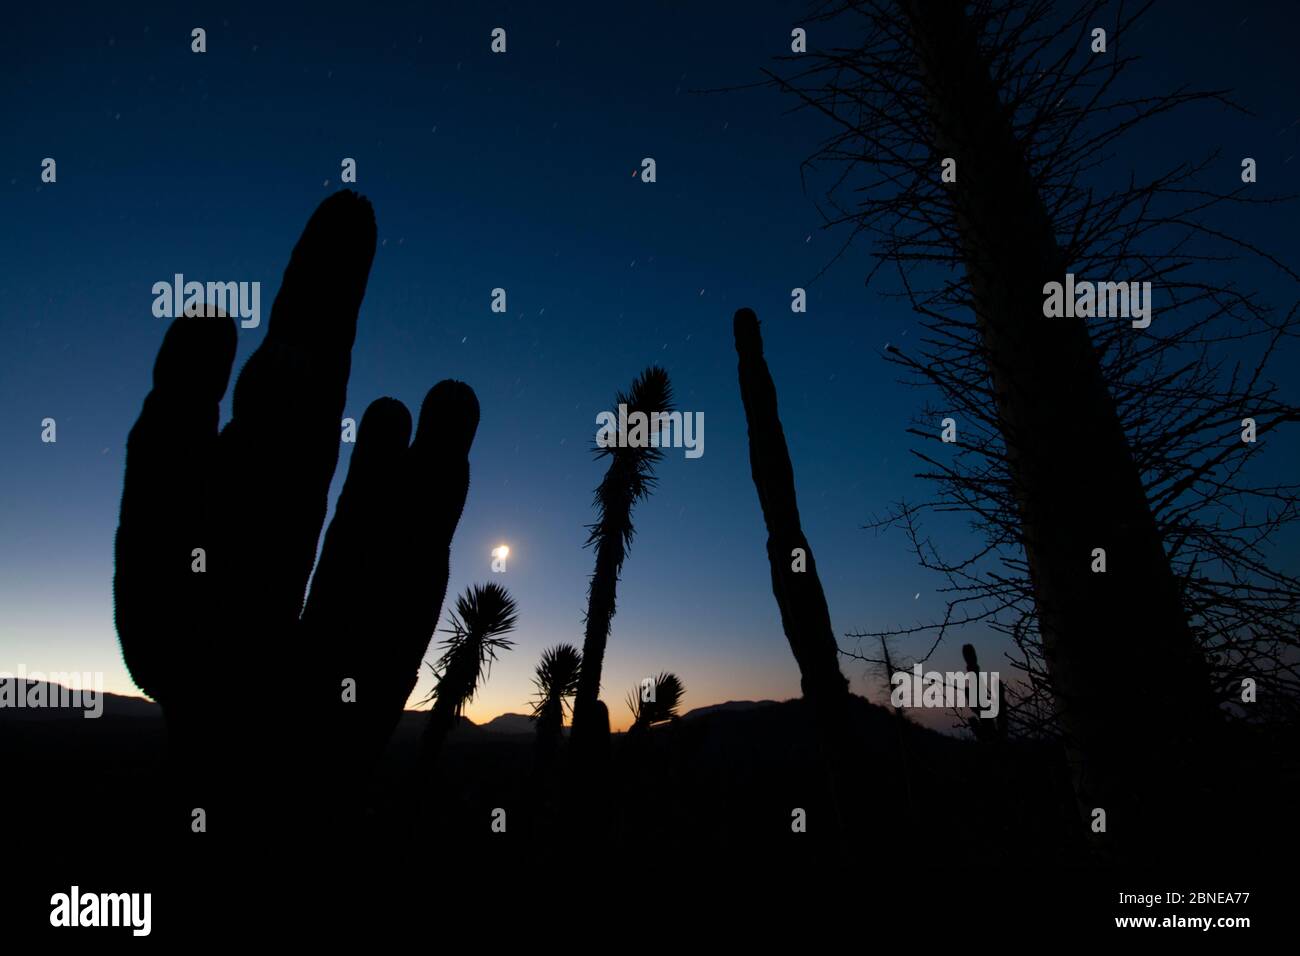 Boojum tree (Fouquieria columnaris), Elephant cactus (Pachycereus pringlei) and Datilillo (Yucca valida) silhouetted at night, Vizcaino Desert, Baja C Stock Photo